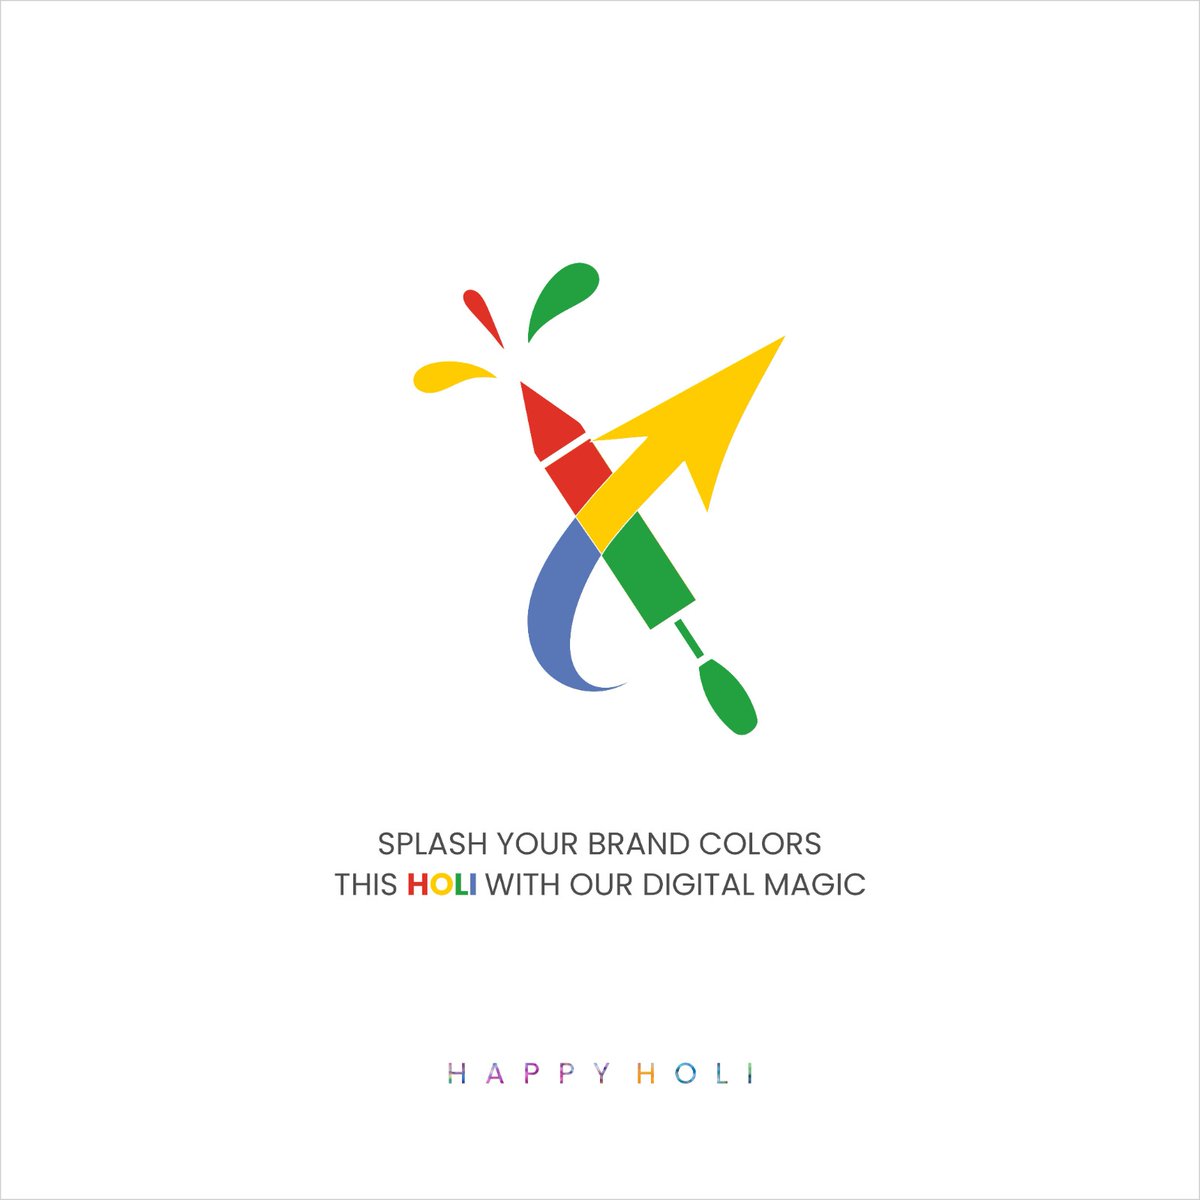 Bringing a burst of creativity to your digital world this Holi !
.
.
.
#happyholi #holifestival #colorfulholi #holicelebration #festivalvibes #hindufestival #holi2024 #hindufestival #festivalvibes #brandingagency #brandingstrategy #socialmediaagency #socialmediatips